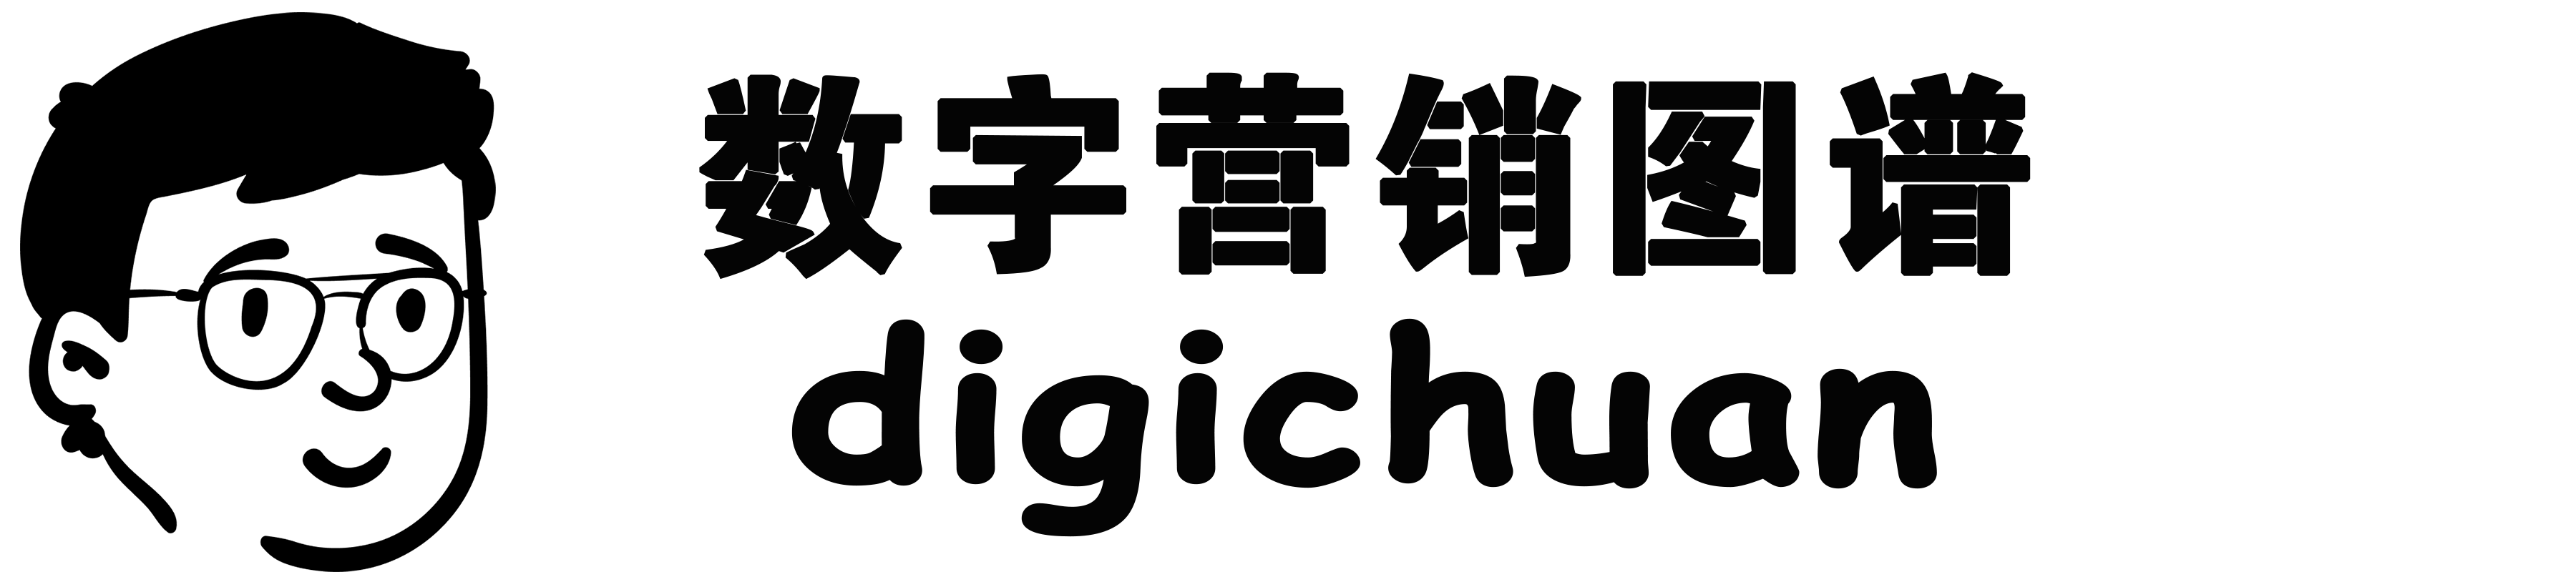 DigiChuan|数字营销图谱导航